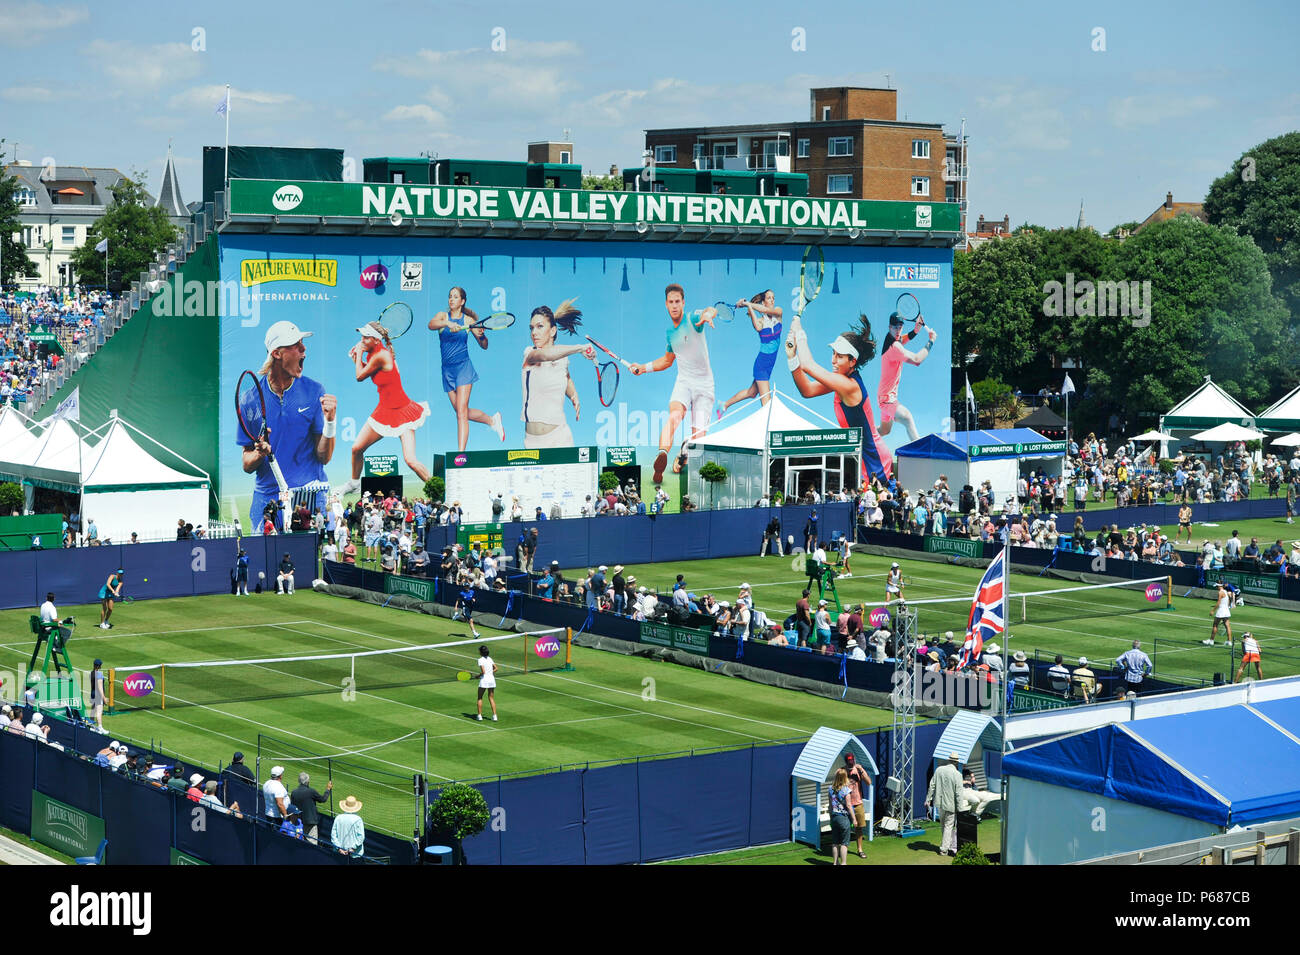 Durante el torneo de tenis internacional Nature Valley en Devonshire Park en Eastbourne East Sussex, Reino Unido. El 25 de junio de 2018 Foto de stock